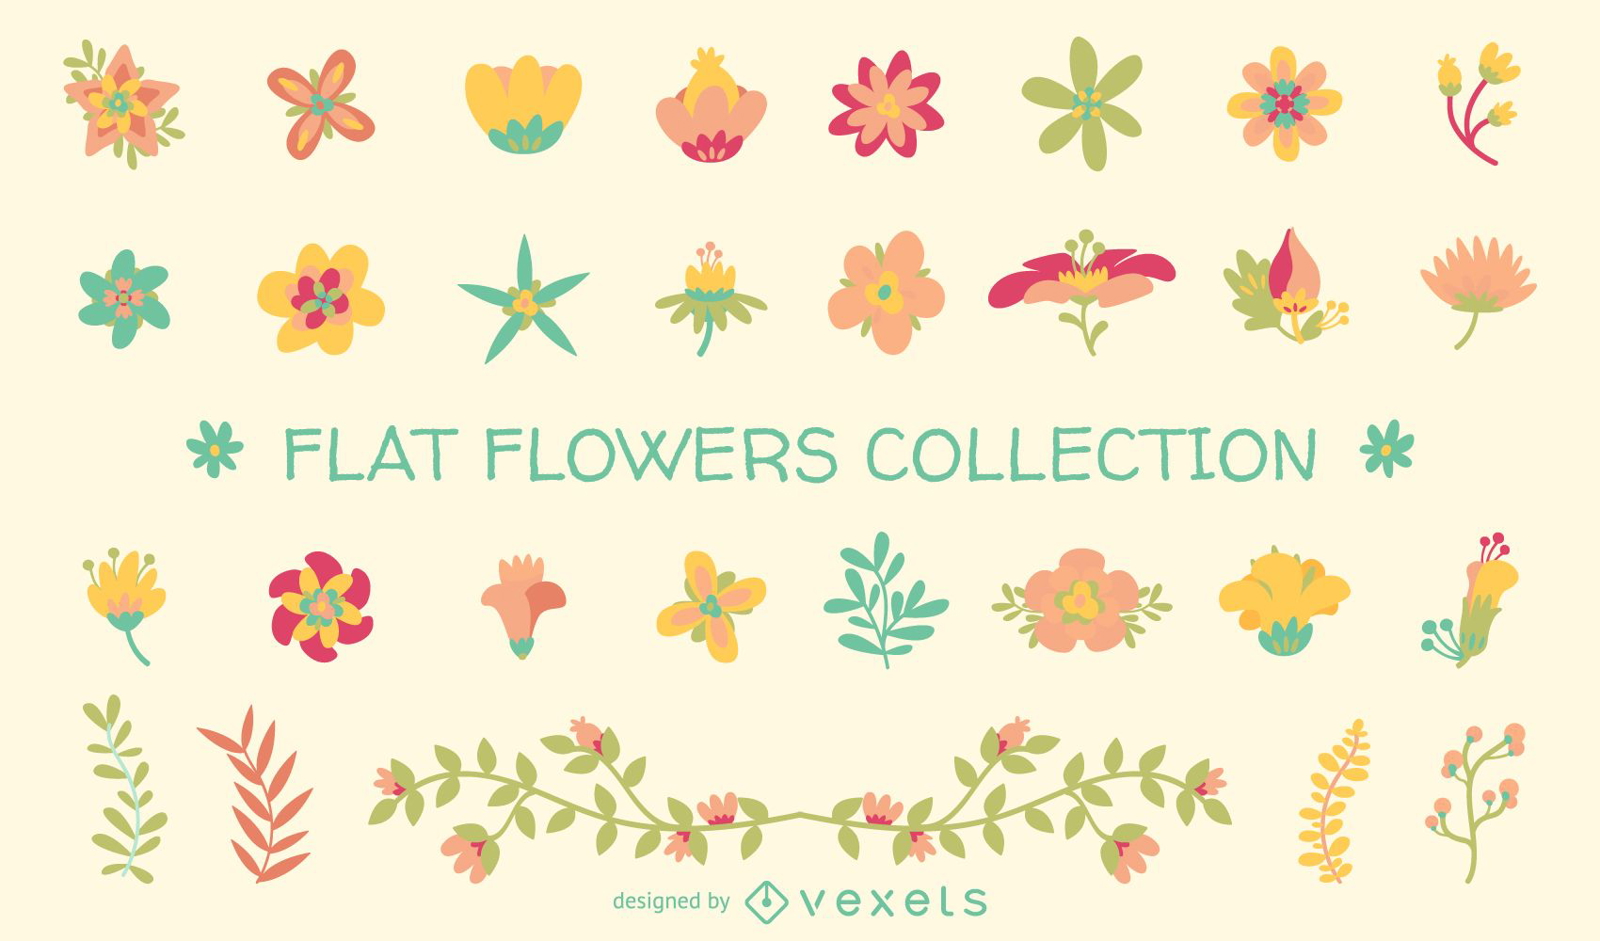 Coleção de ilustrações de flores planas